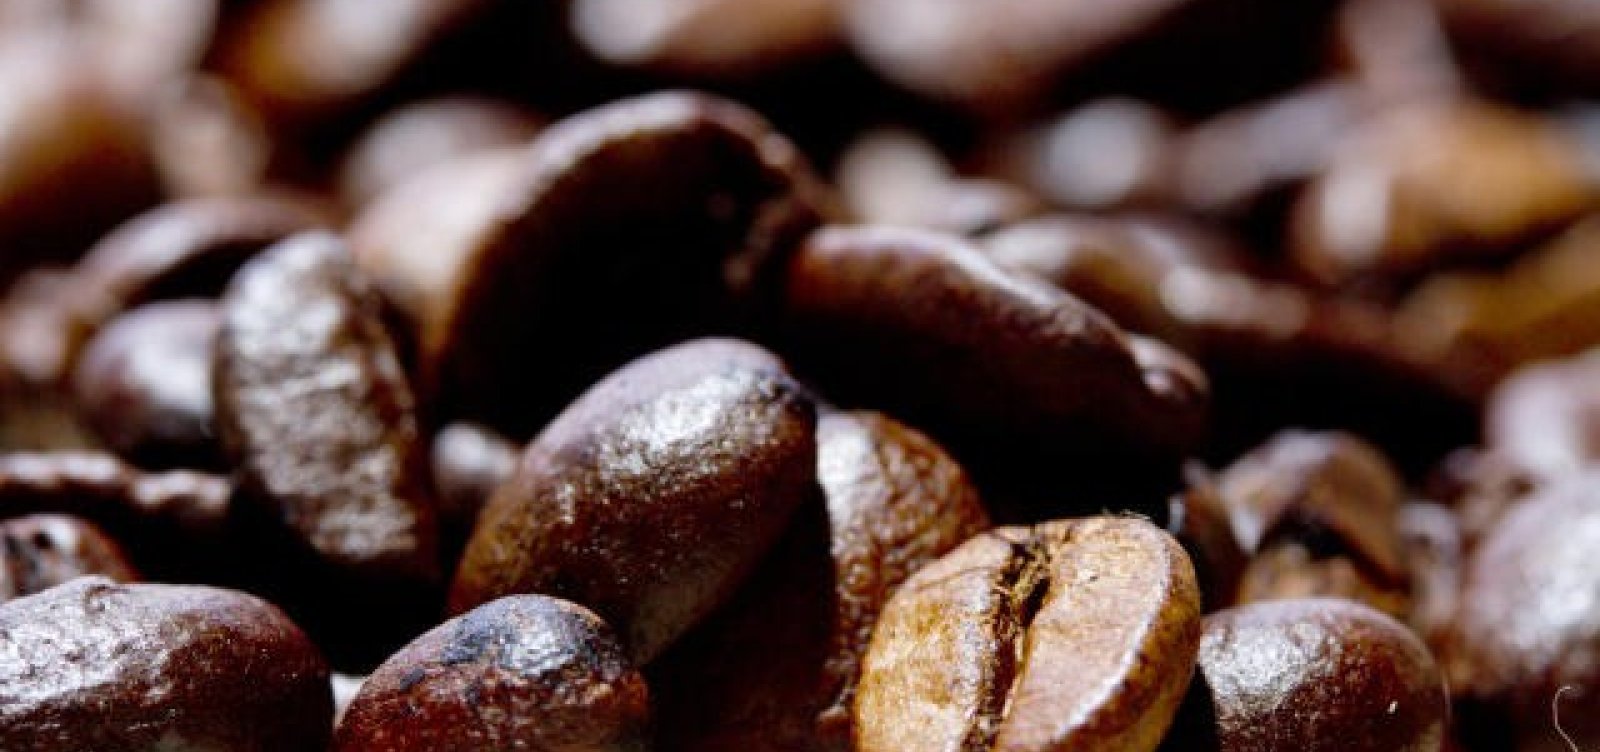 Ministério da Agricultura revela lista de marcas e lotes de café impróprios para consumo